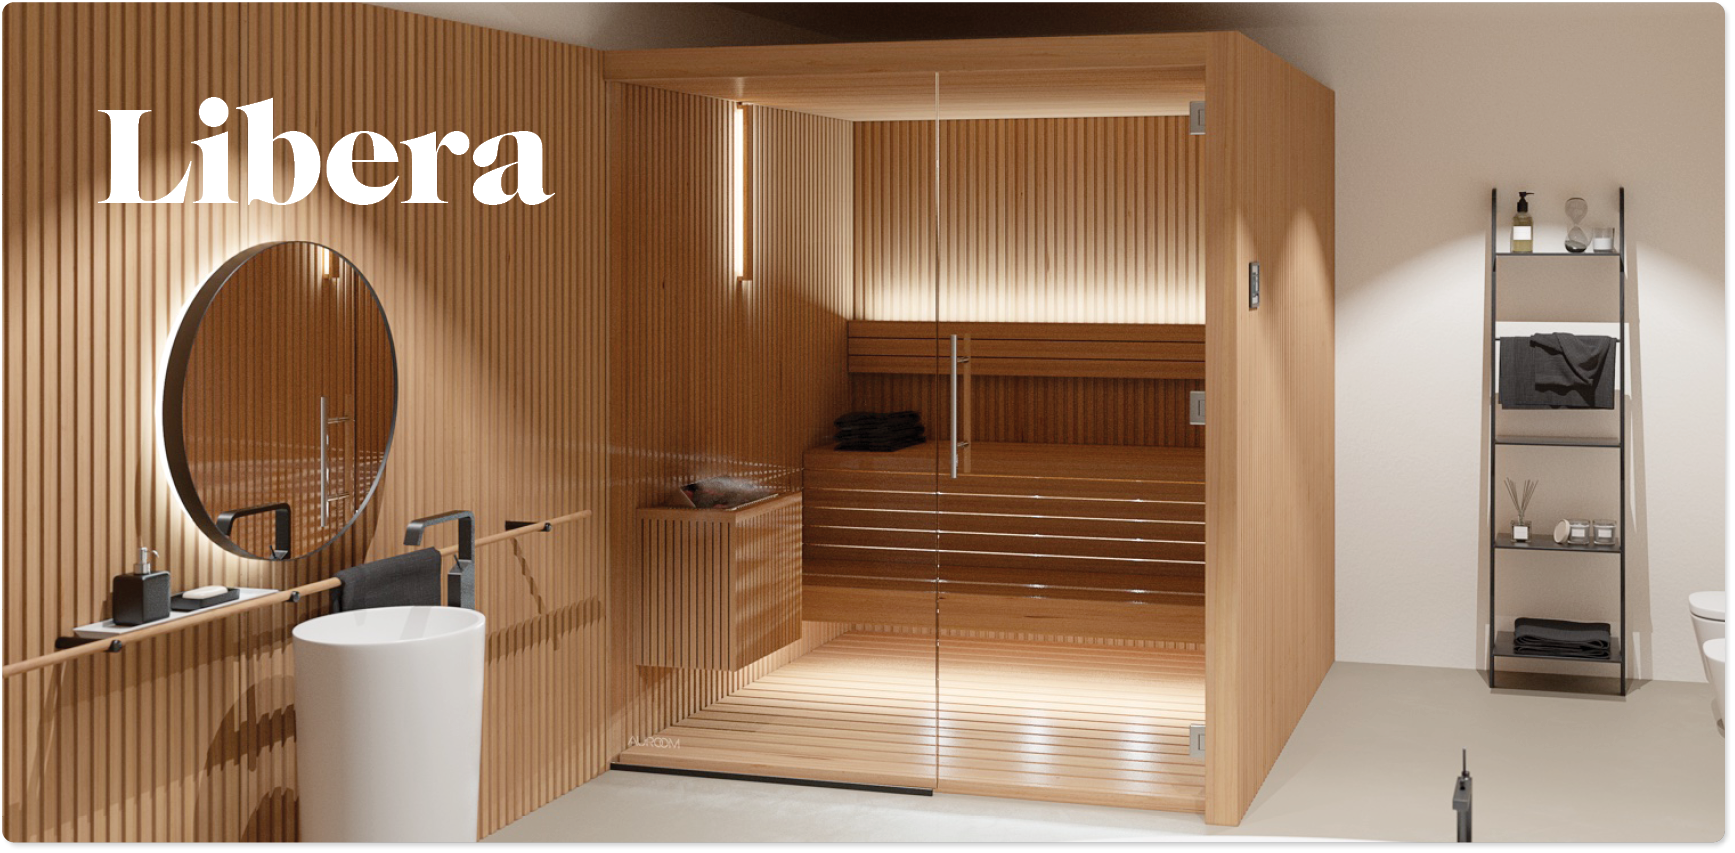 Auroo Libera sauna indoor cabin